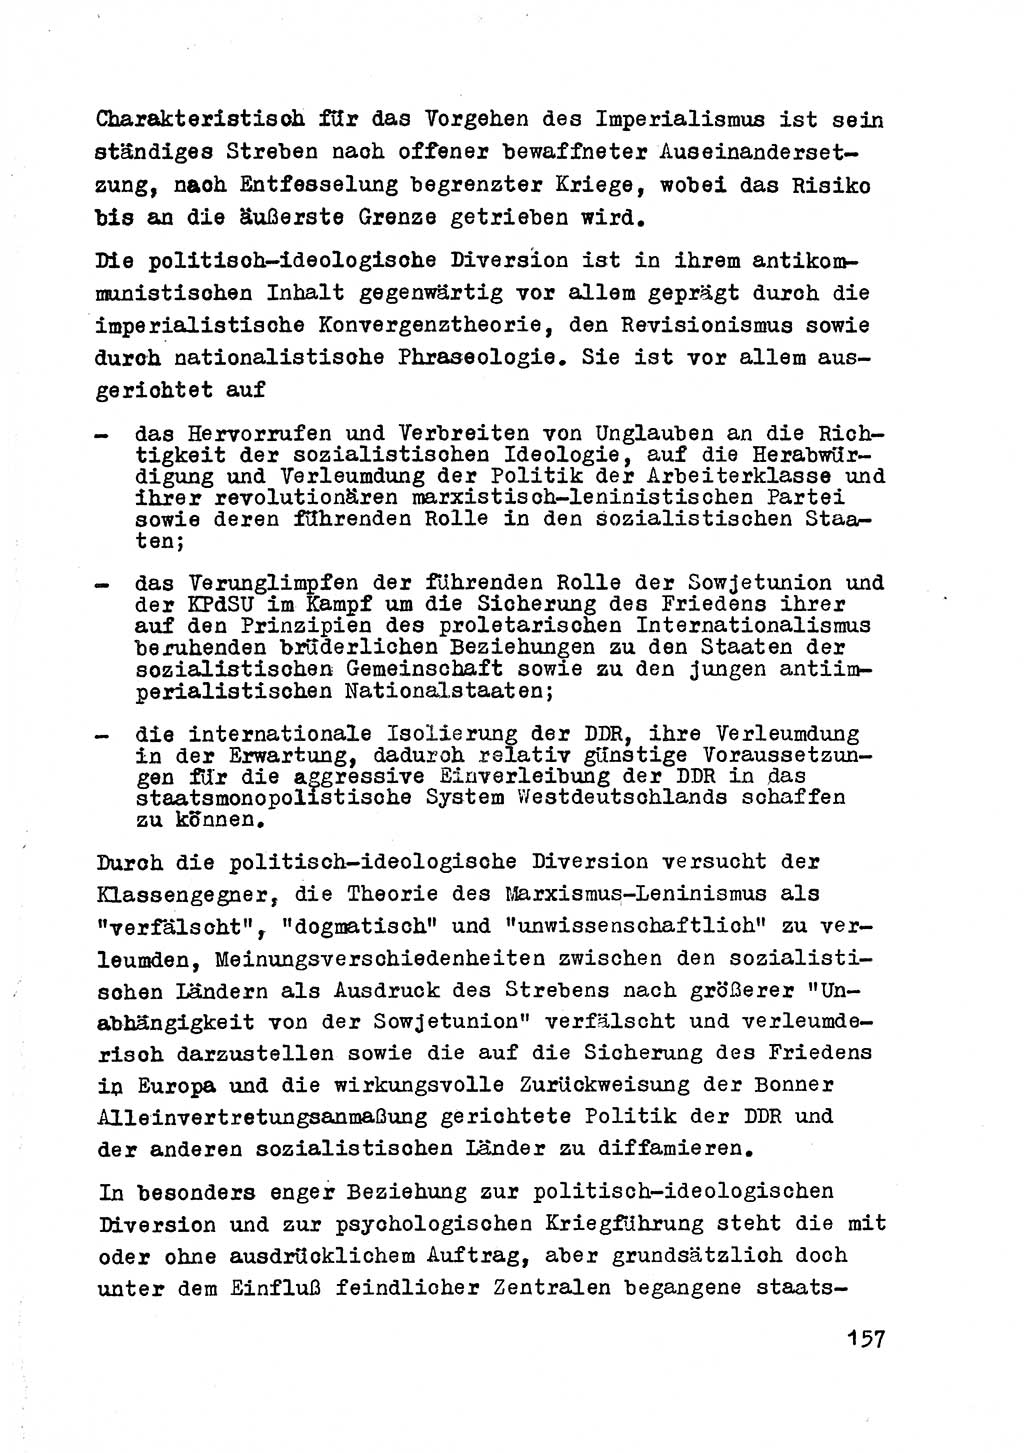 Strafrecht der DDR (Deutsche Demokratische Republik), Besonderer Teil, Lehrmaterial, Heft 2 1969, Seite 157 (Strafr. DDR BT Lehrmat. H. 2 1969, S. 157)